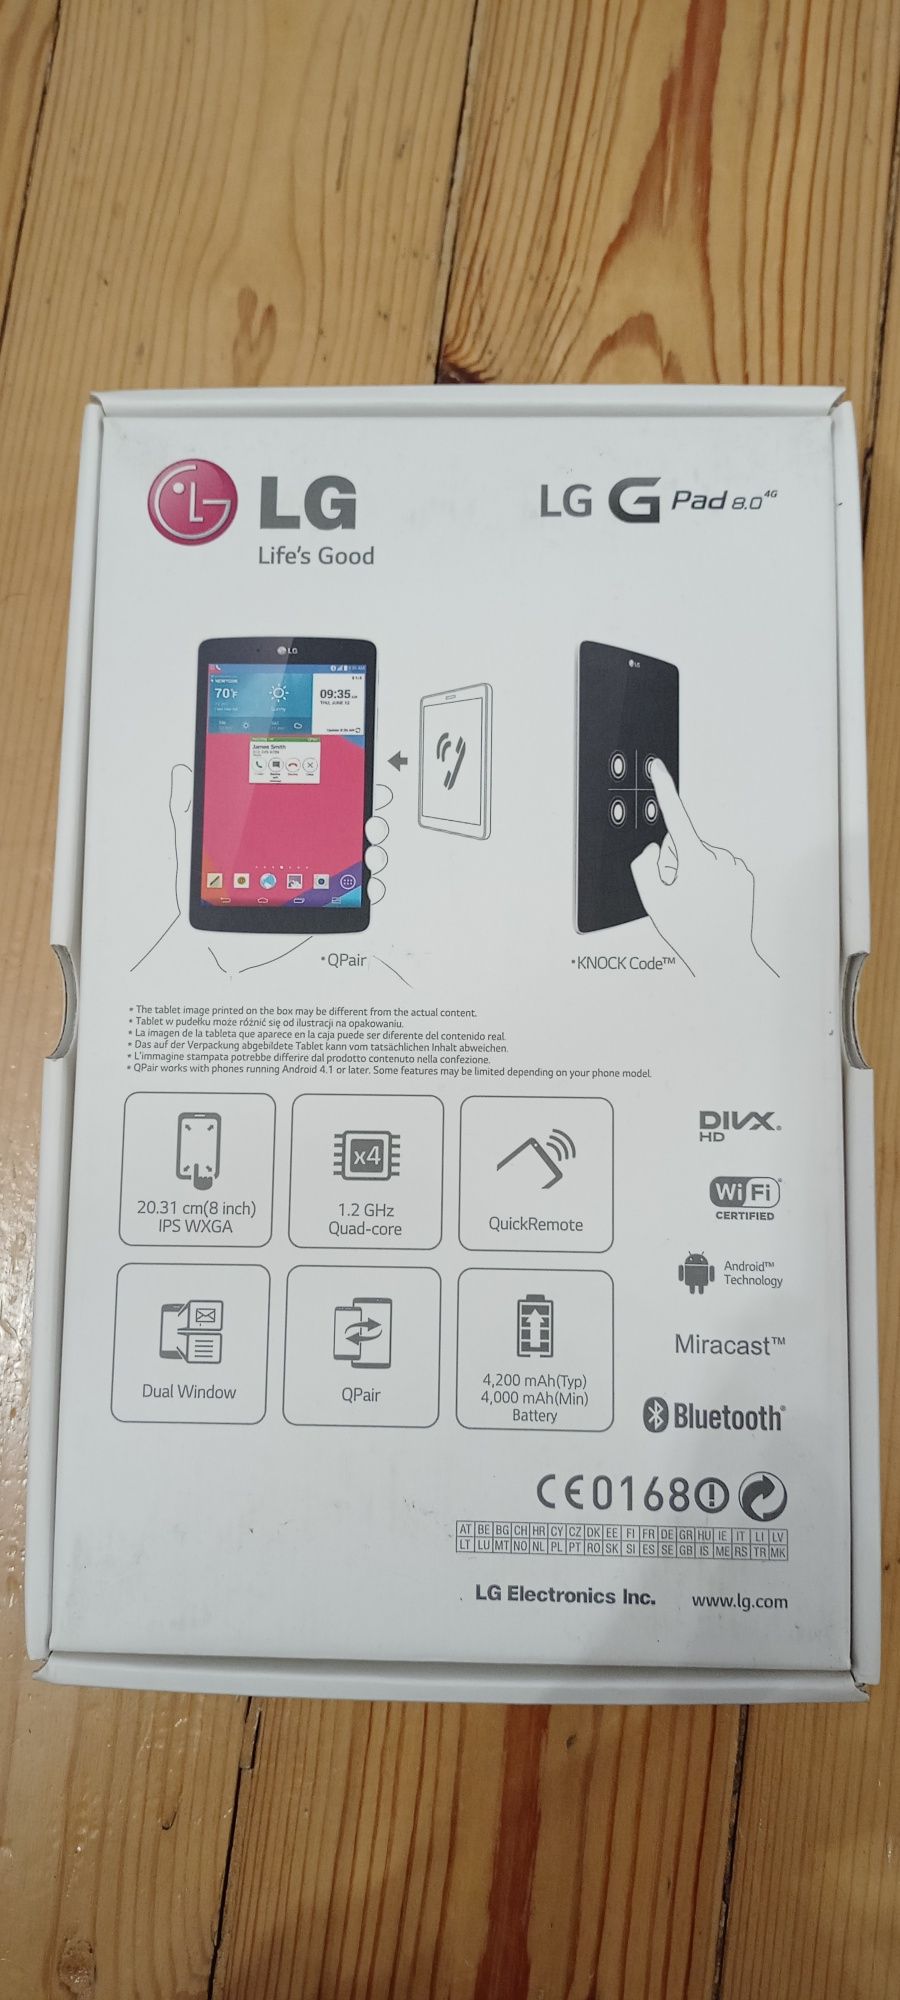 Tablet LG G Pad 8.0 + etui